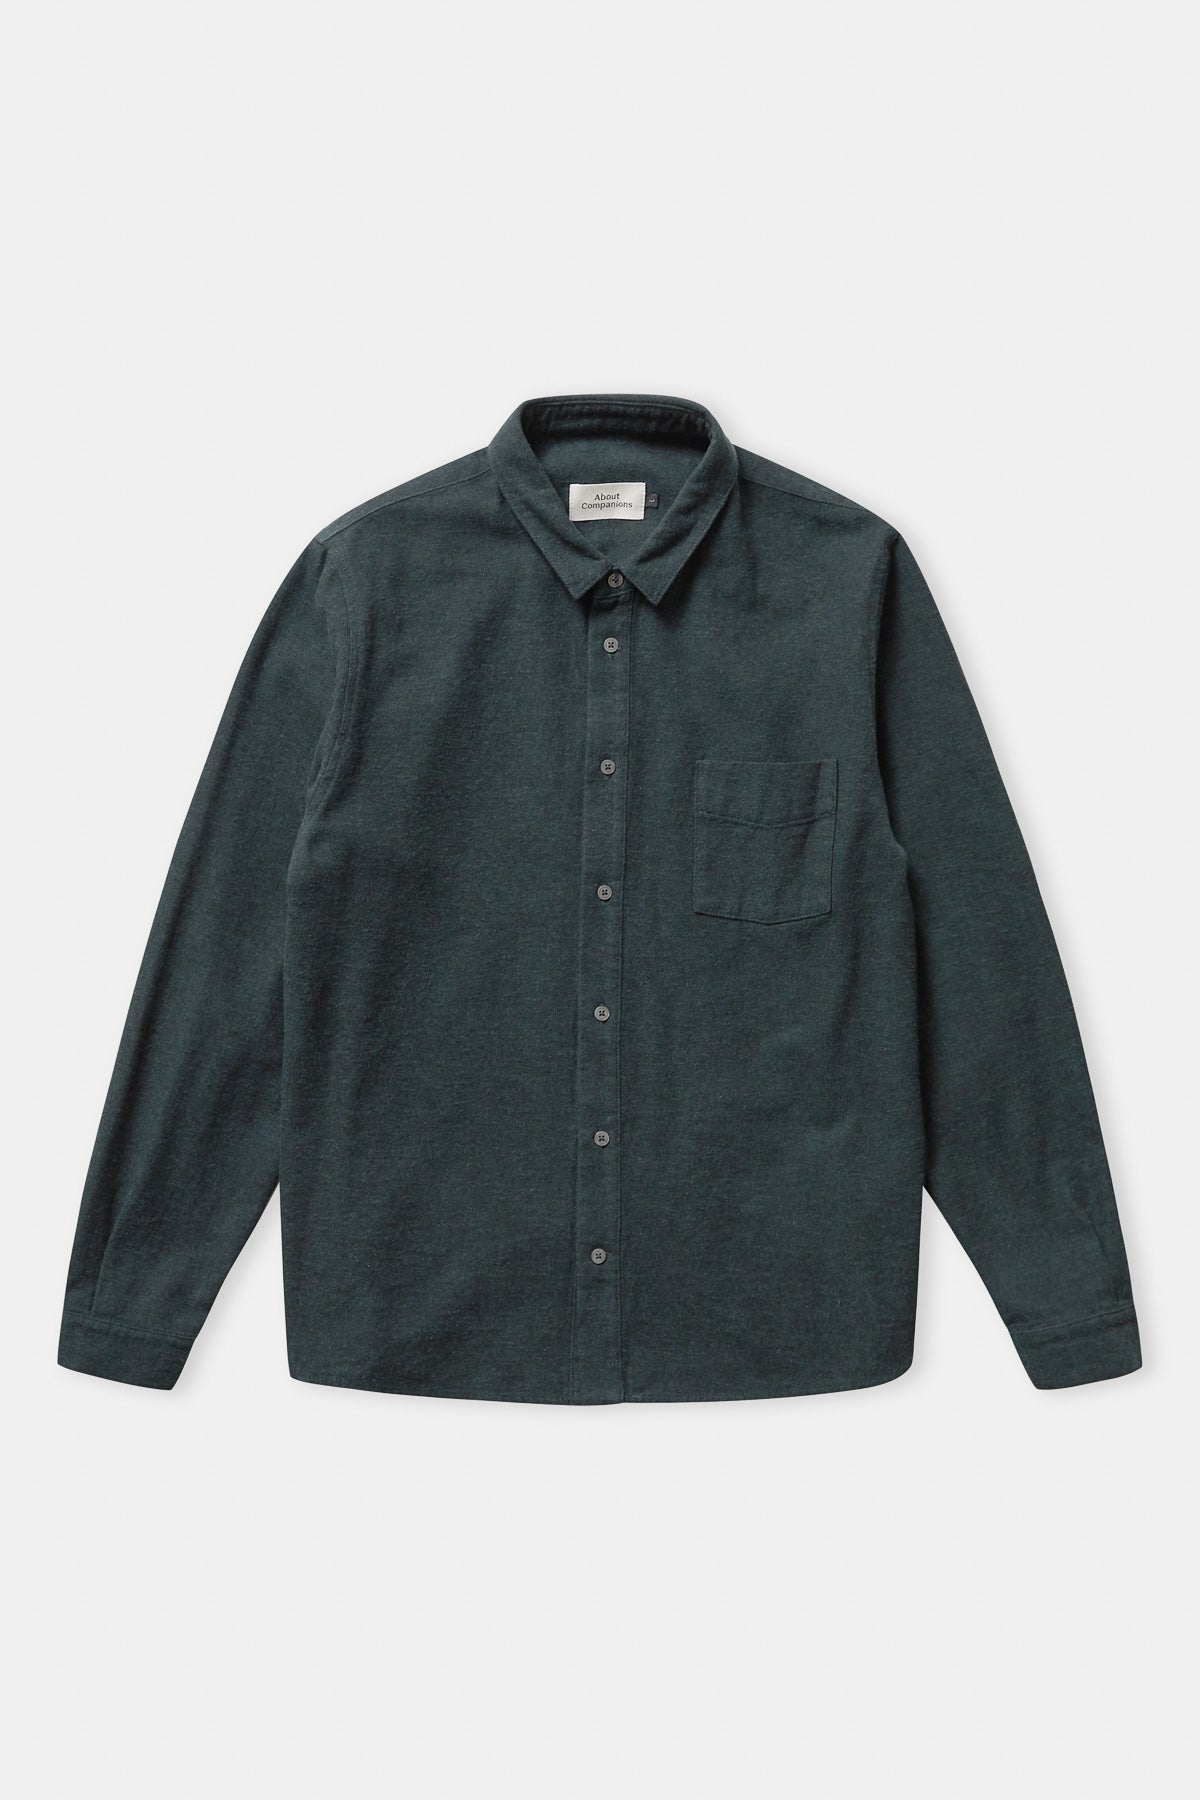 SIMON shirt (eco flannel)